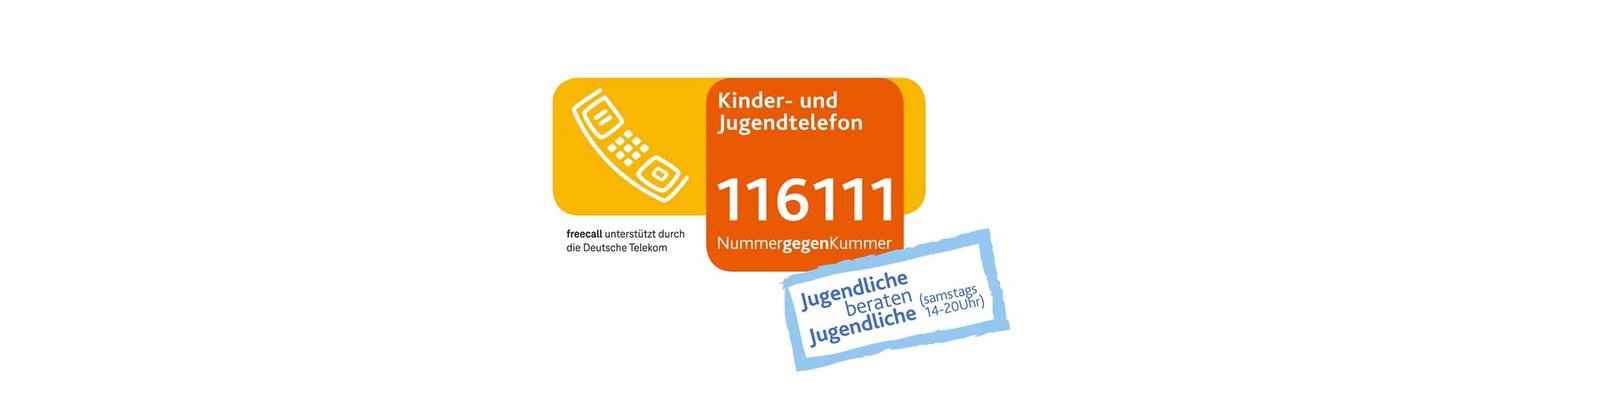 Logo des Kinder- und Jugendtelefons Nummer gegen Kummer